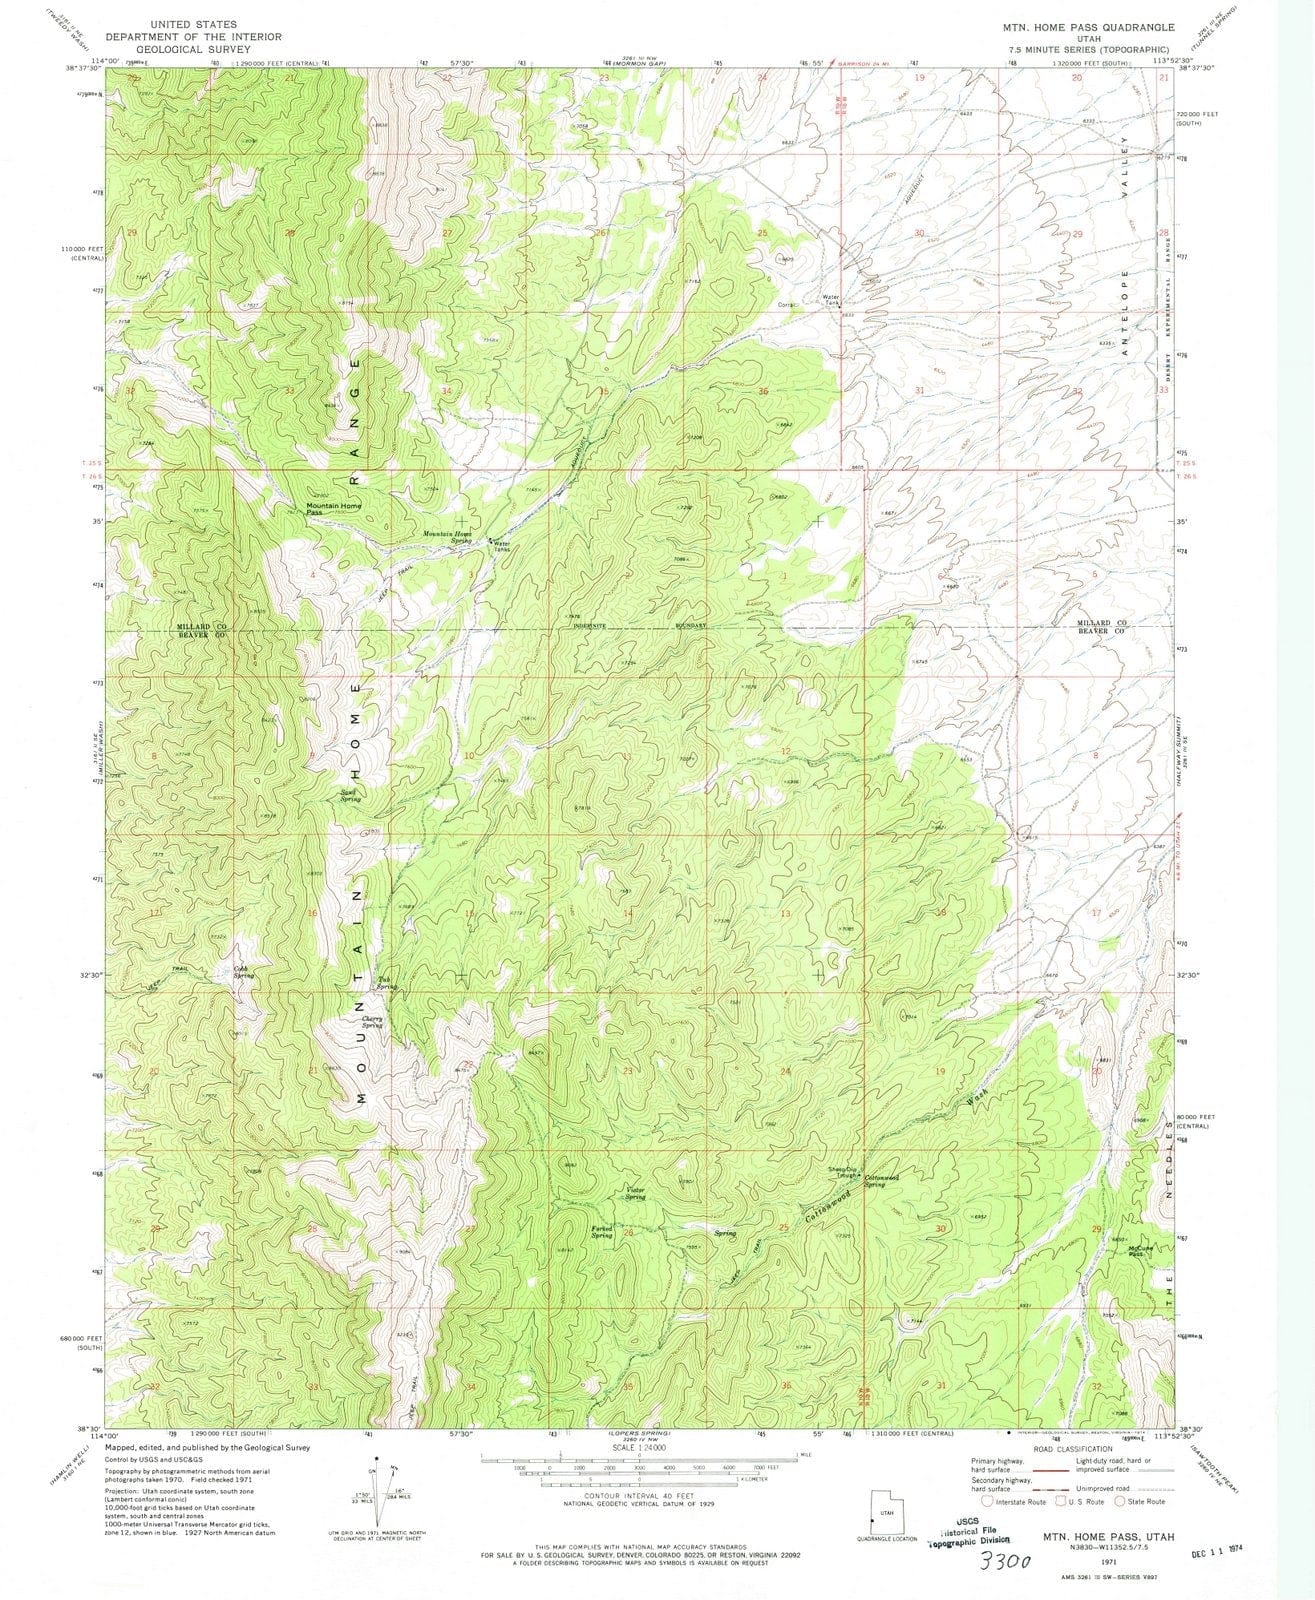 1971 Mountain Home Pass, UT - Utah - USGS Topographic Map